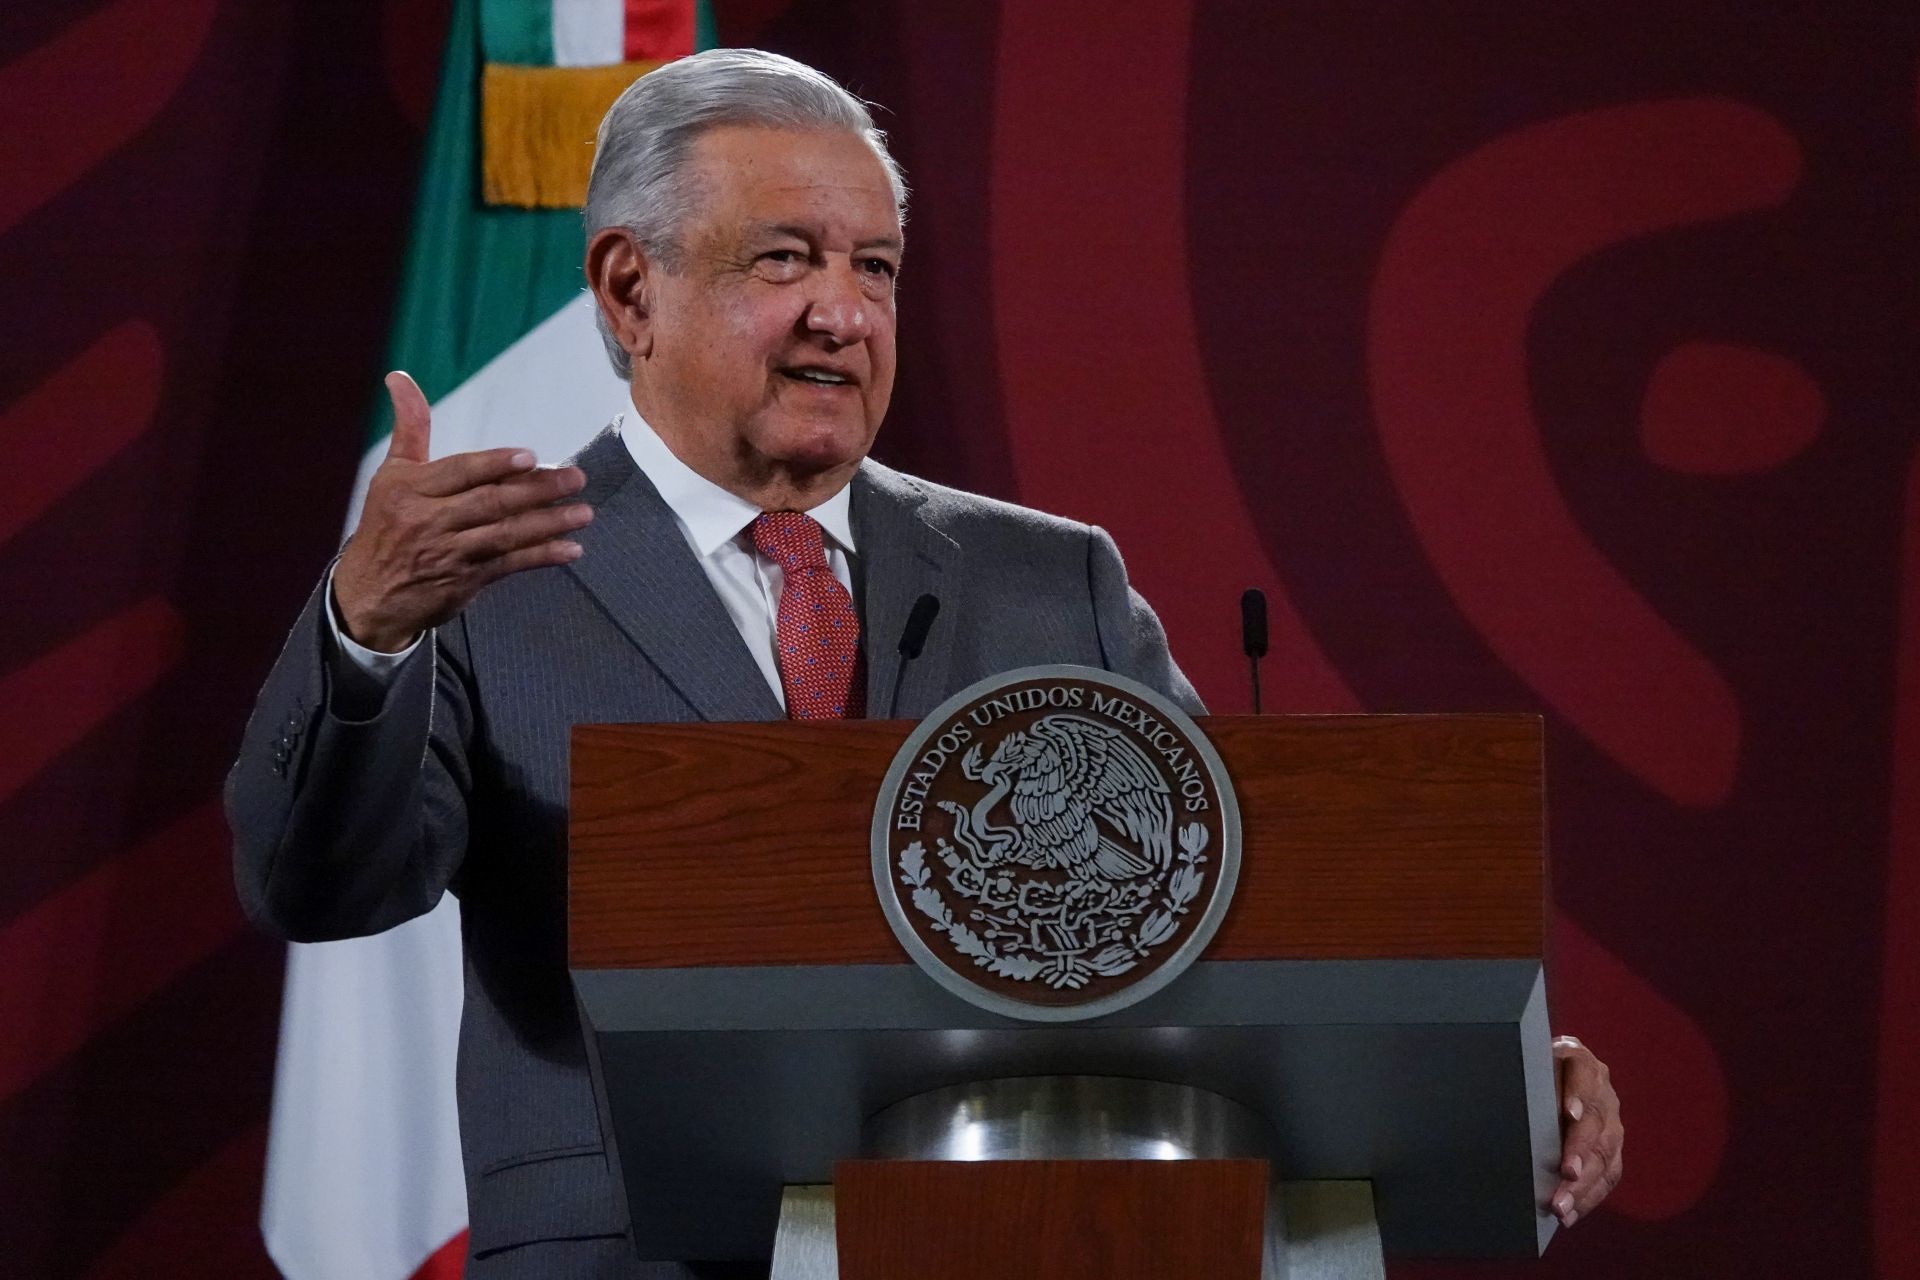 Los problemas con el avión comenzaron poco después de que López Obrador asumiera el poder (Foto: Cuartoscuro)